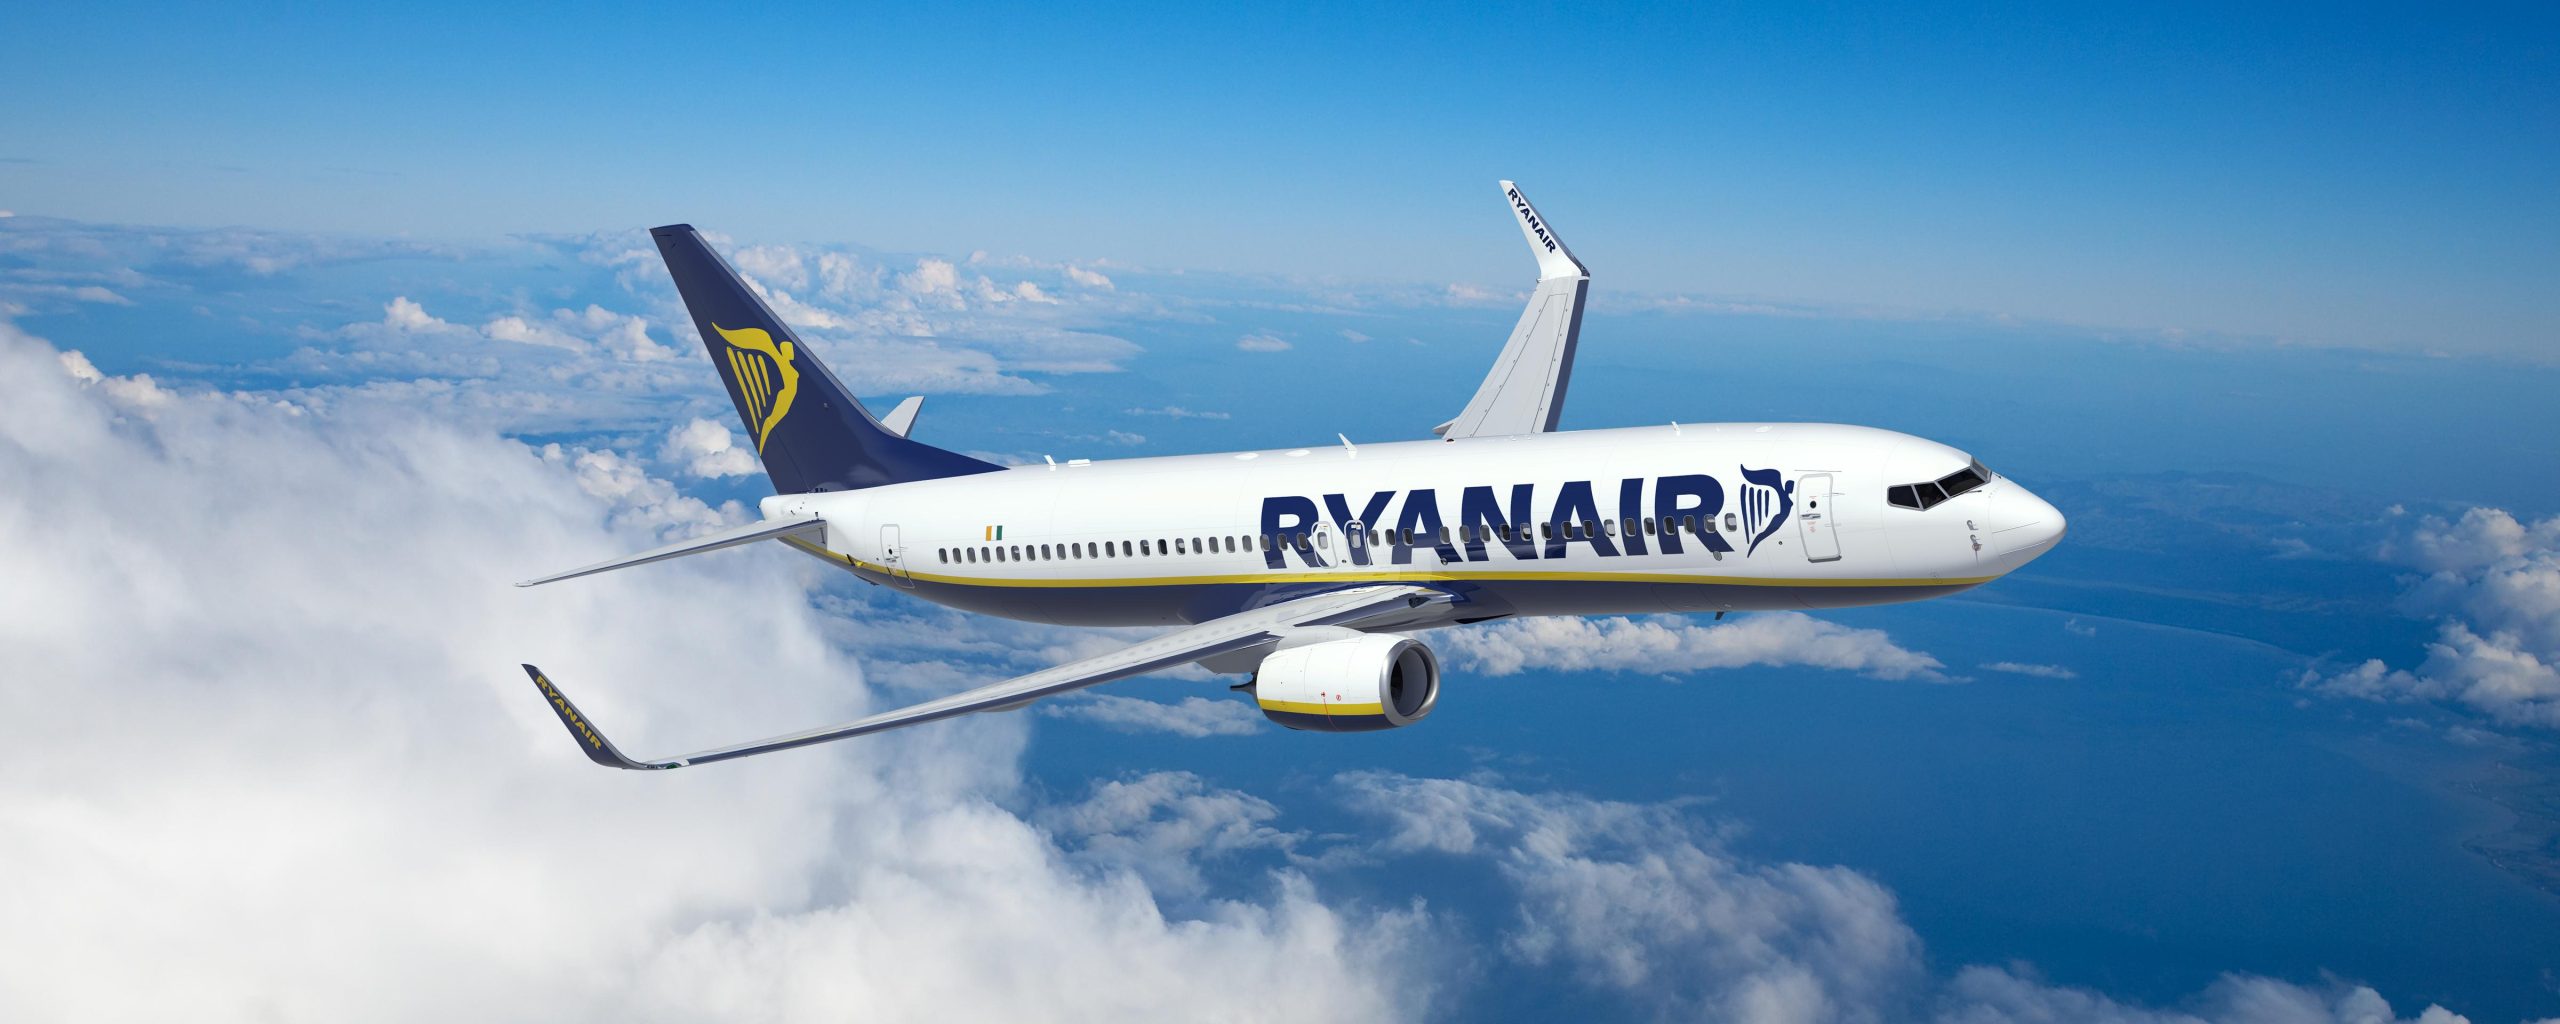 Λόγω αυξημένης ζήτησης η Ryanair παρατείνει την προσφορά της για το “SANTORINI EXPERIENCE”